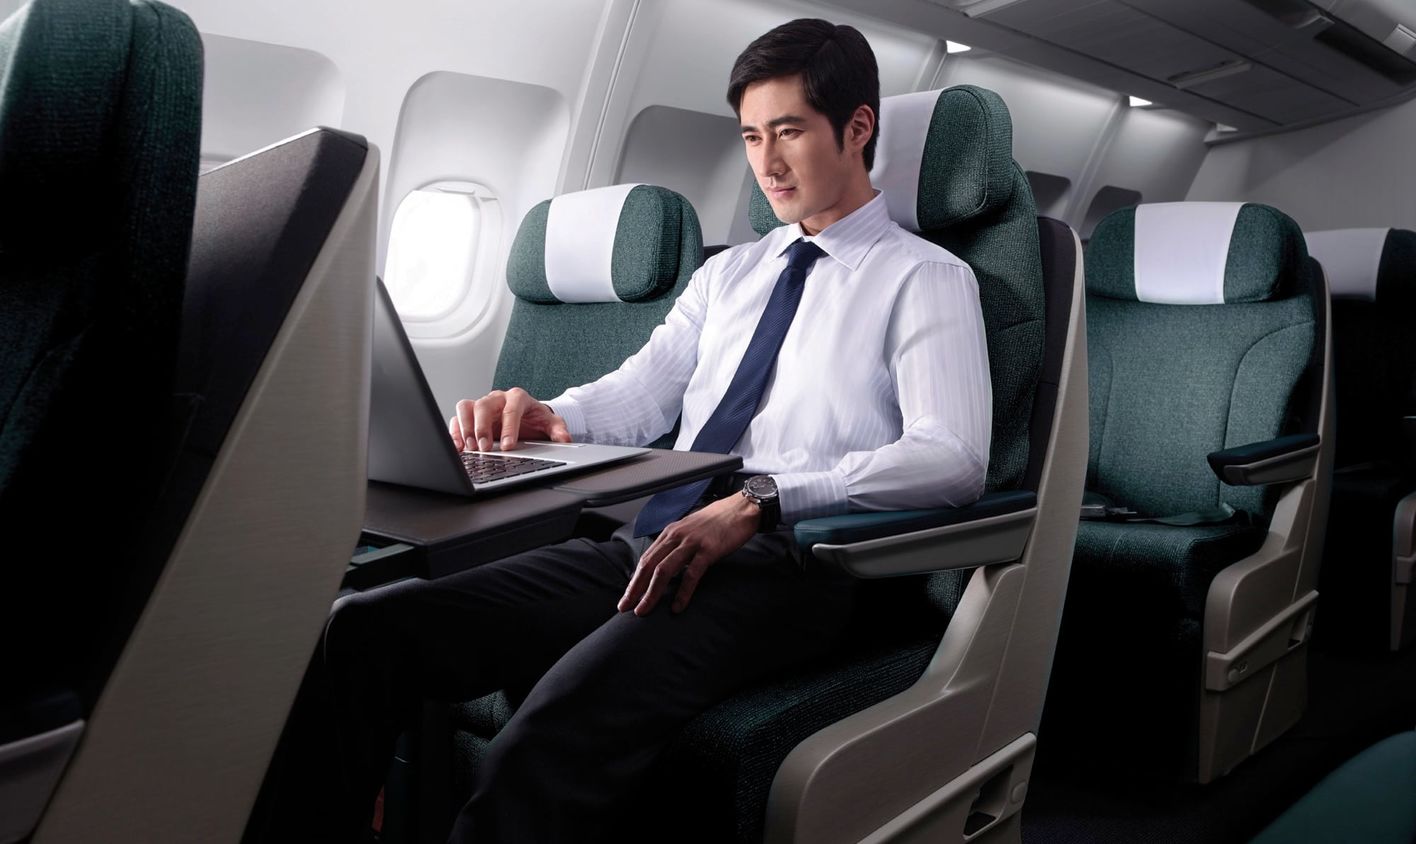 キャセイパシフィック航空(CX)の新しい機材・エアバス A321neoが2020年10月デビューへ。ビジネスクラスは？